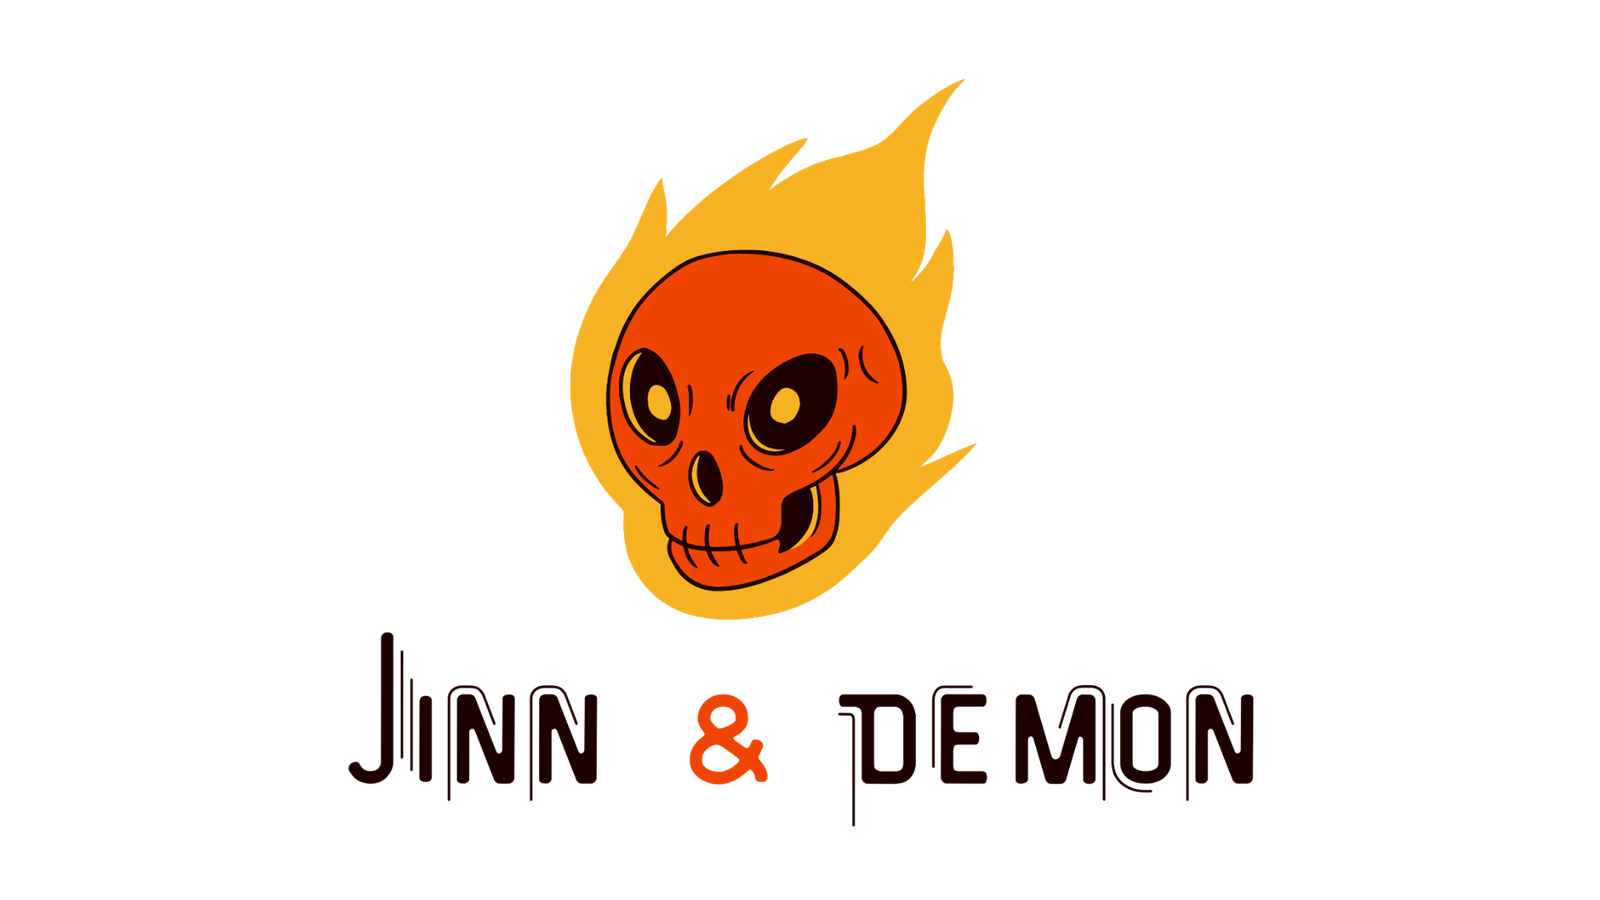 Jinn & Demon